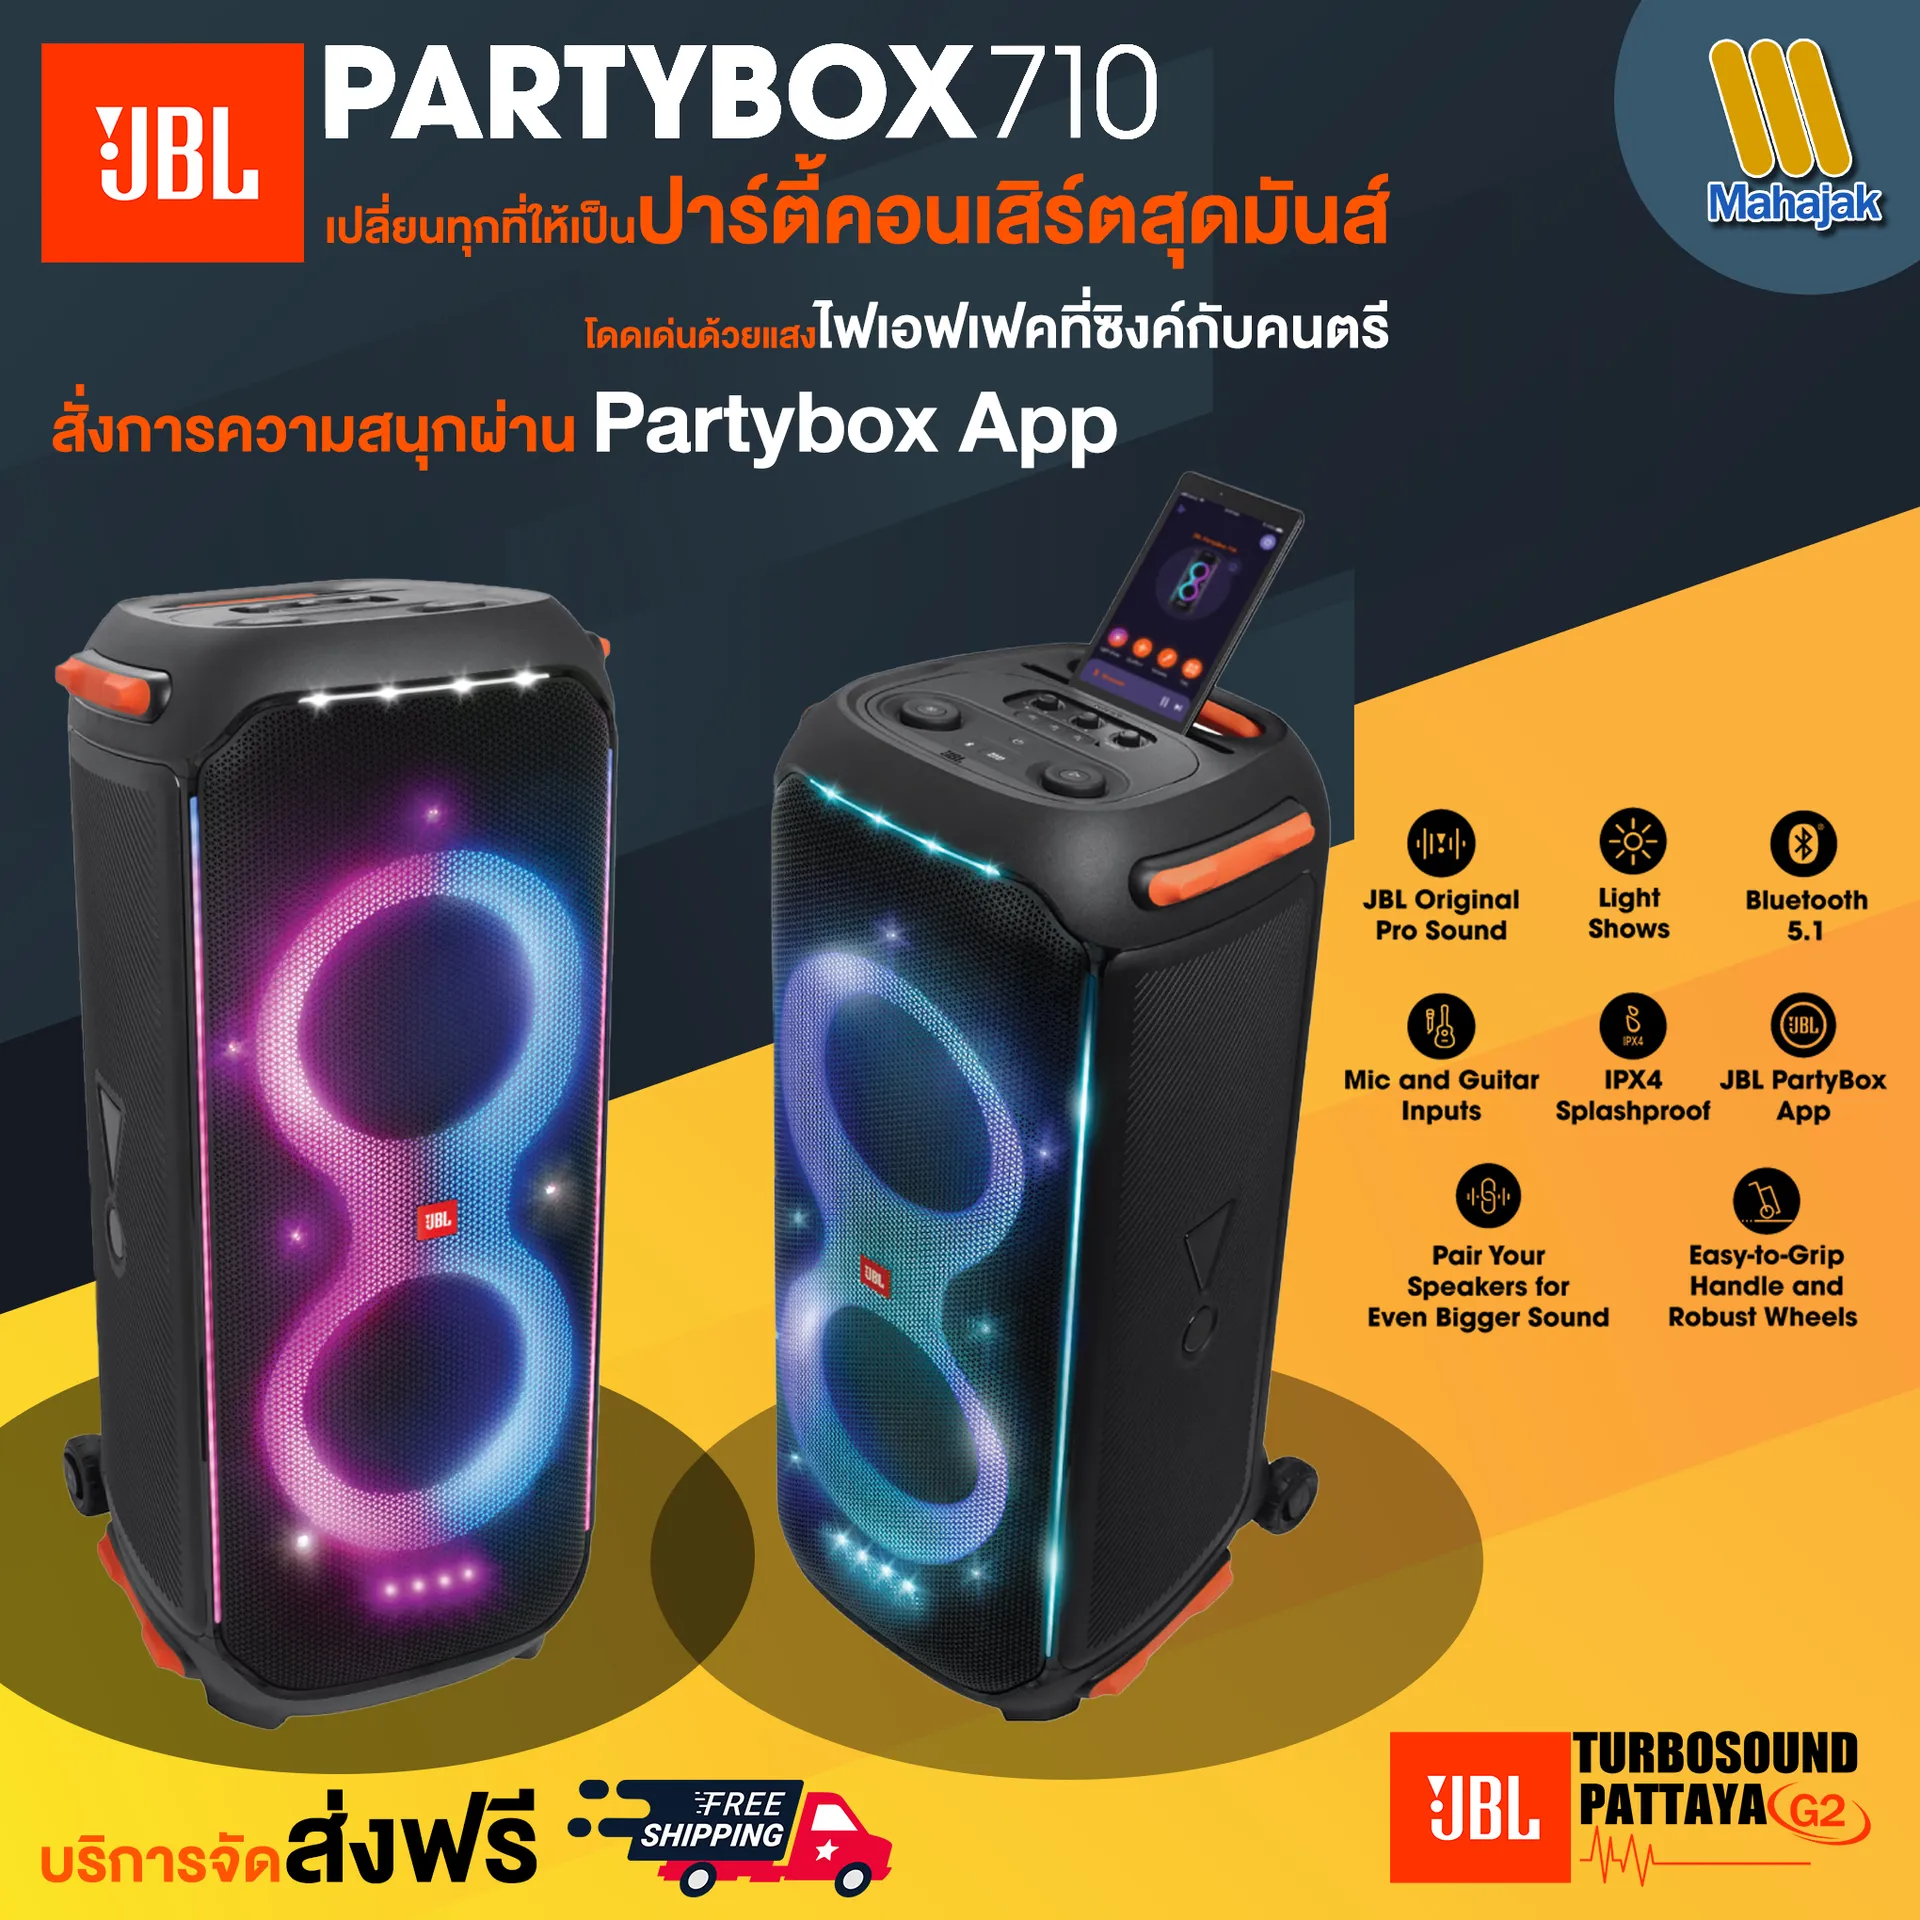 New!! JBL PARTYBOX 710 ลำโพงสายปาร์ตี้ขนาดใหม่ มาพร้อมเอฟเฟคแสงไฟ  และเสียงอันทรงพลัง 